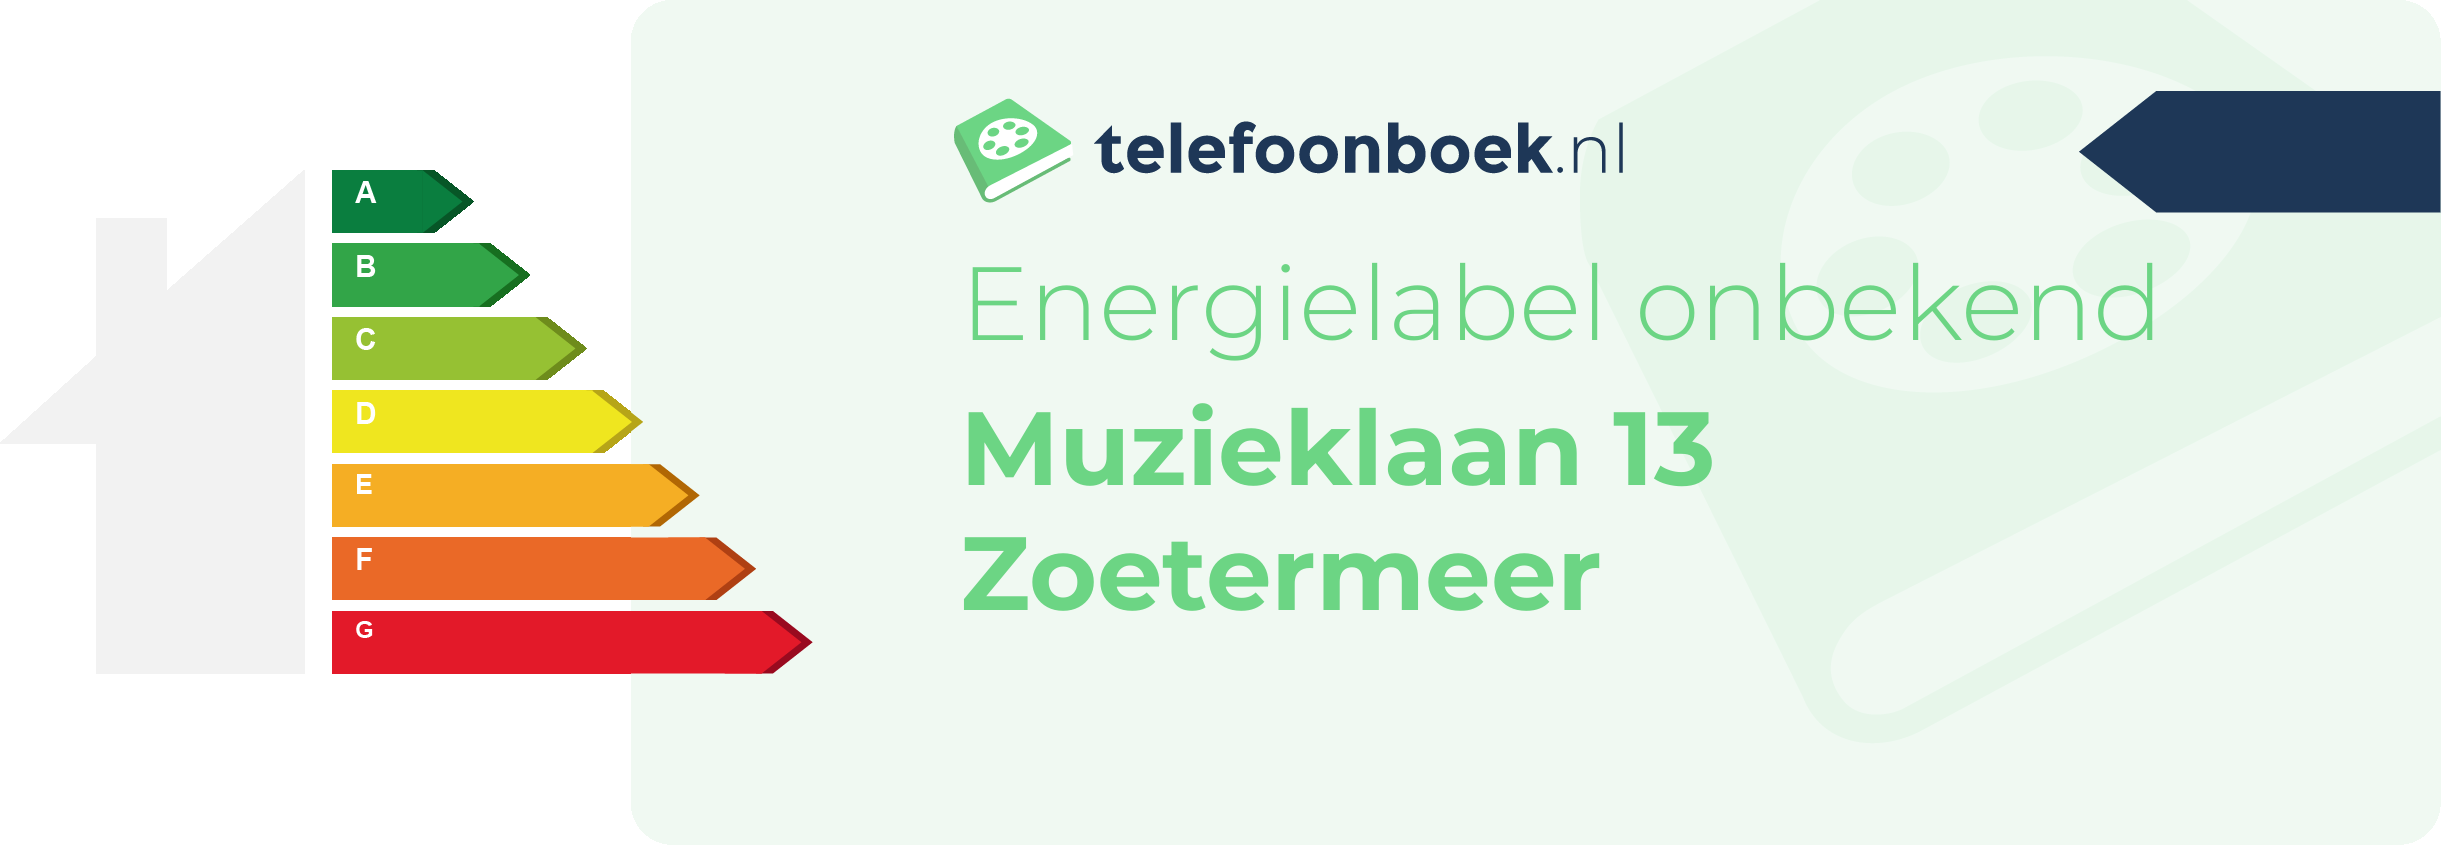 Energielabel Muzieklaan 13 Zoetermeer